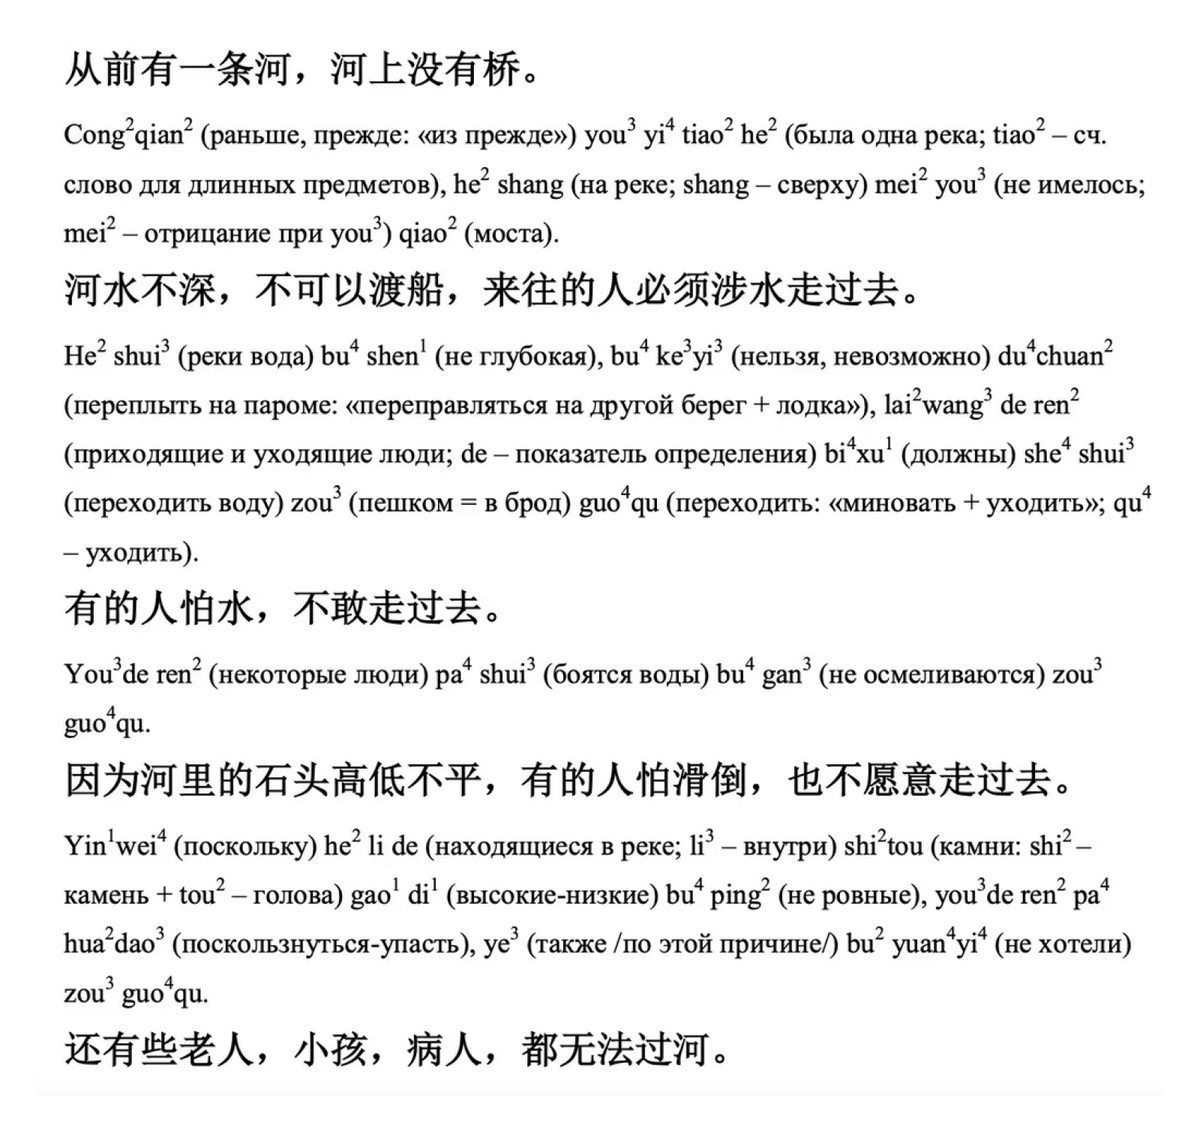 Китайские сказки с дословным переводом на русский язык и лексико-грамматическим комментарием